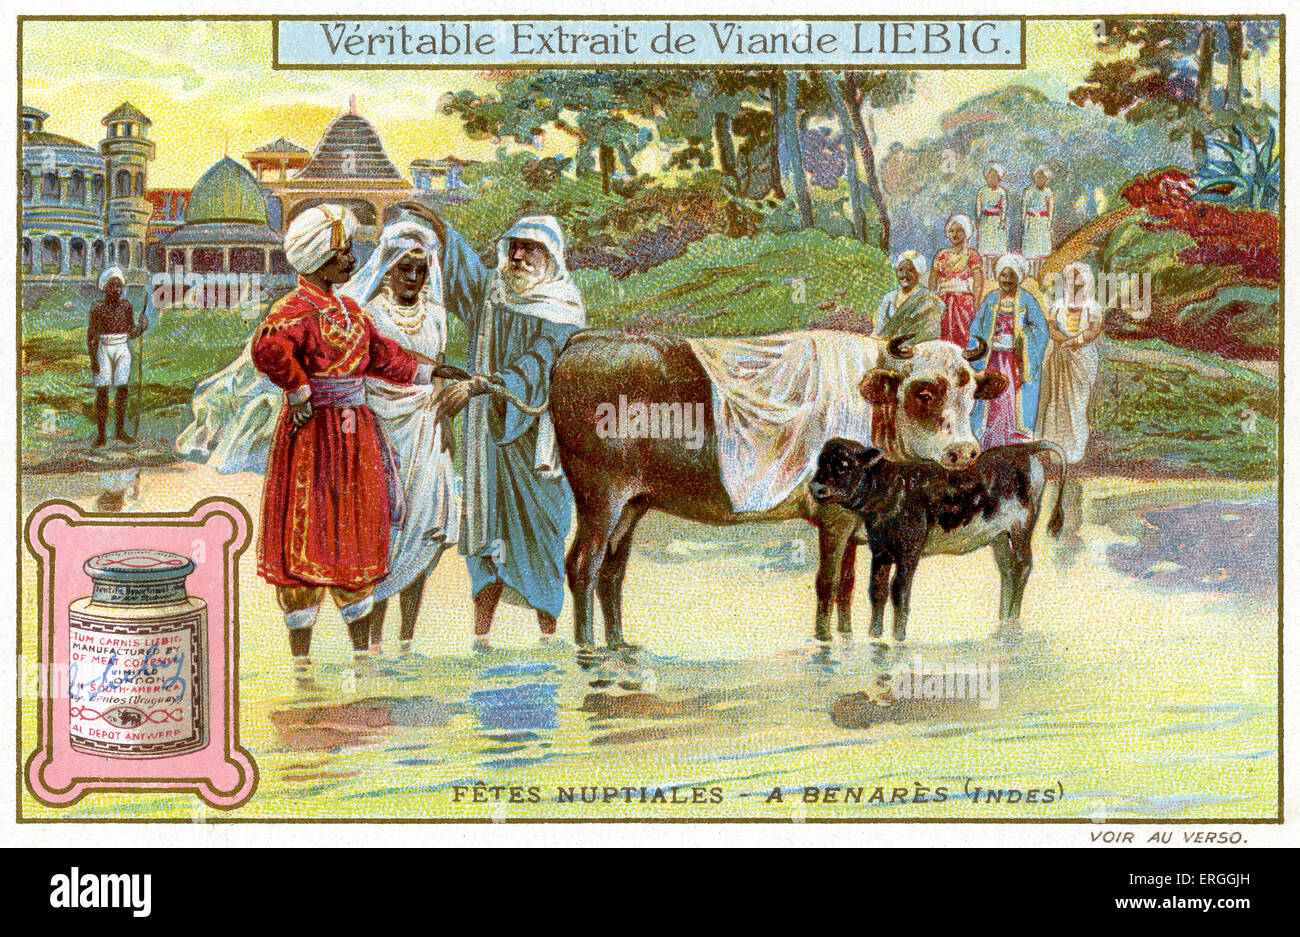 Hochzeitsfeiern: Benares, Indien, 1910. Traditionelle Trauung. Liebig-Sammelkartenspiel ("FÊTES NUPTIALES"). Stockfoto